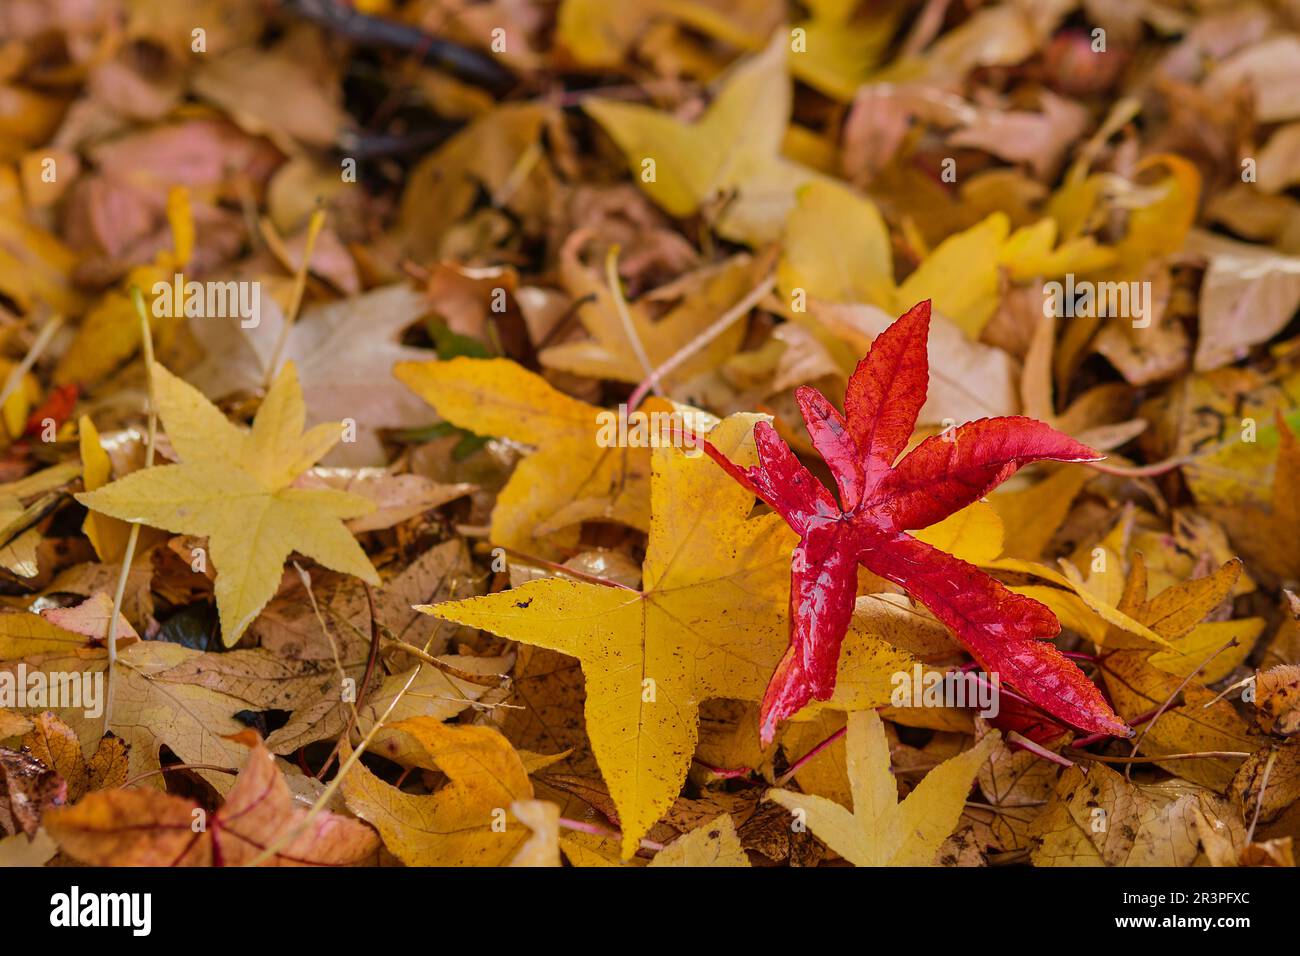 Gelbe und rote Ahornblätter auf dem Boden, Herbstidee für Hintergrund oder Tapete, Blätter fallen. Selektiver Fokus auf rotes Blatt Stockfoto